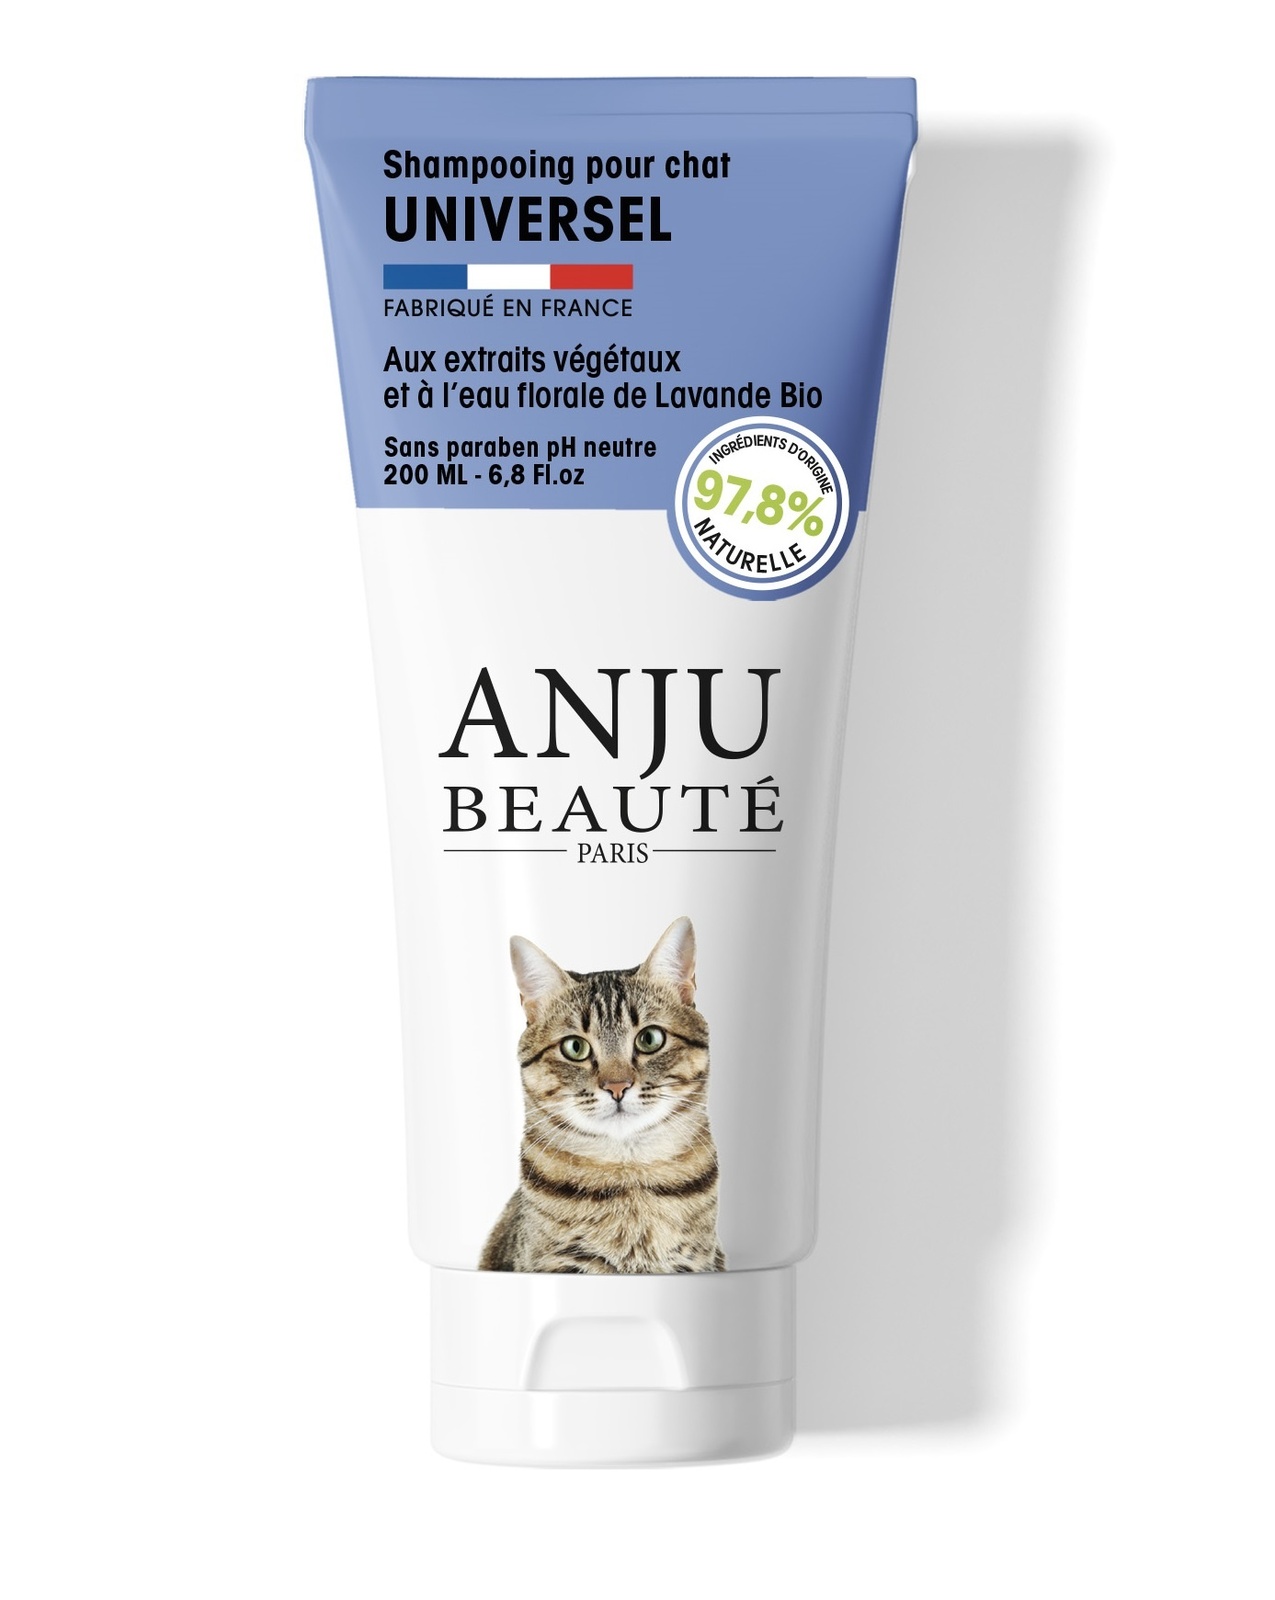 Anju Beaute шампунь для кошек универсальный, 200 мл (200 г)